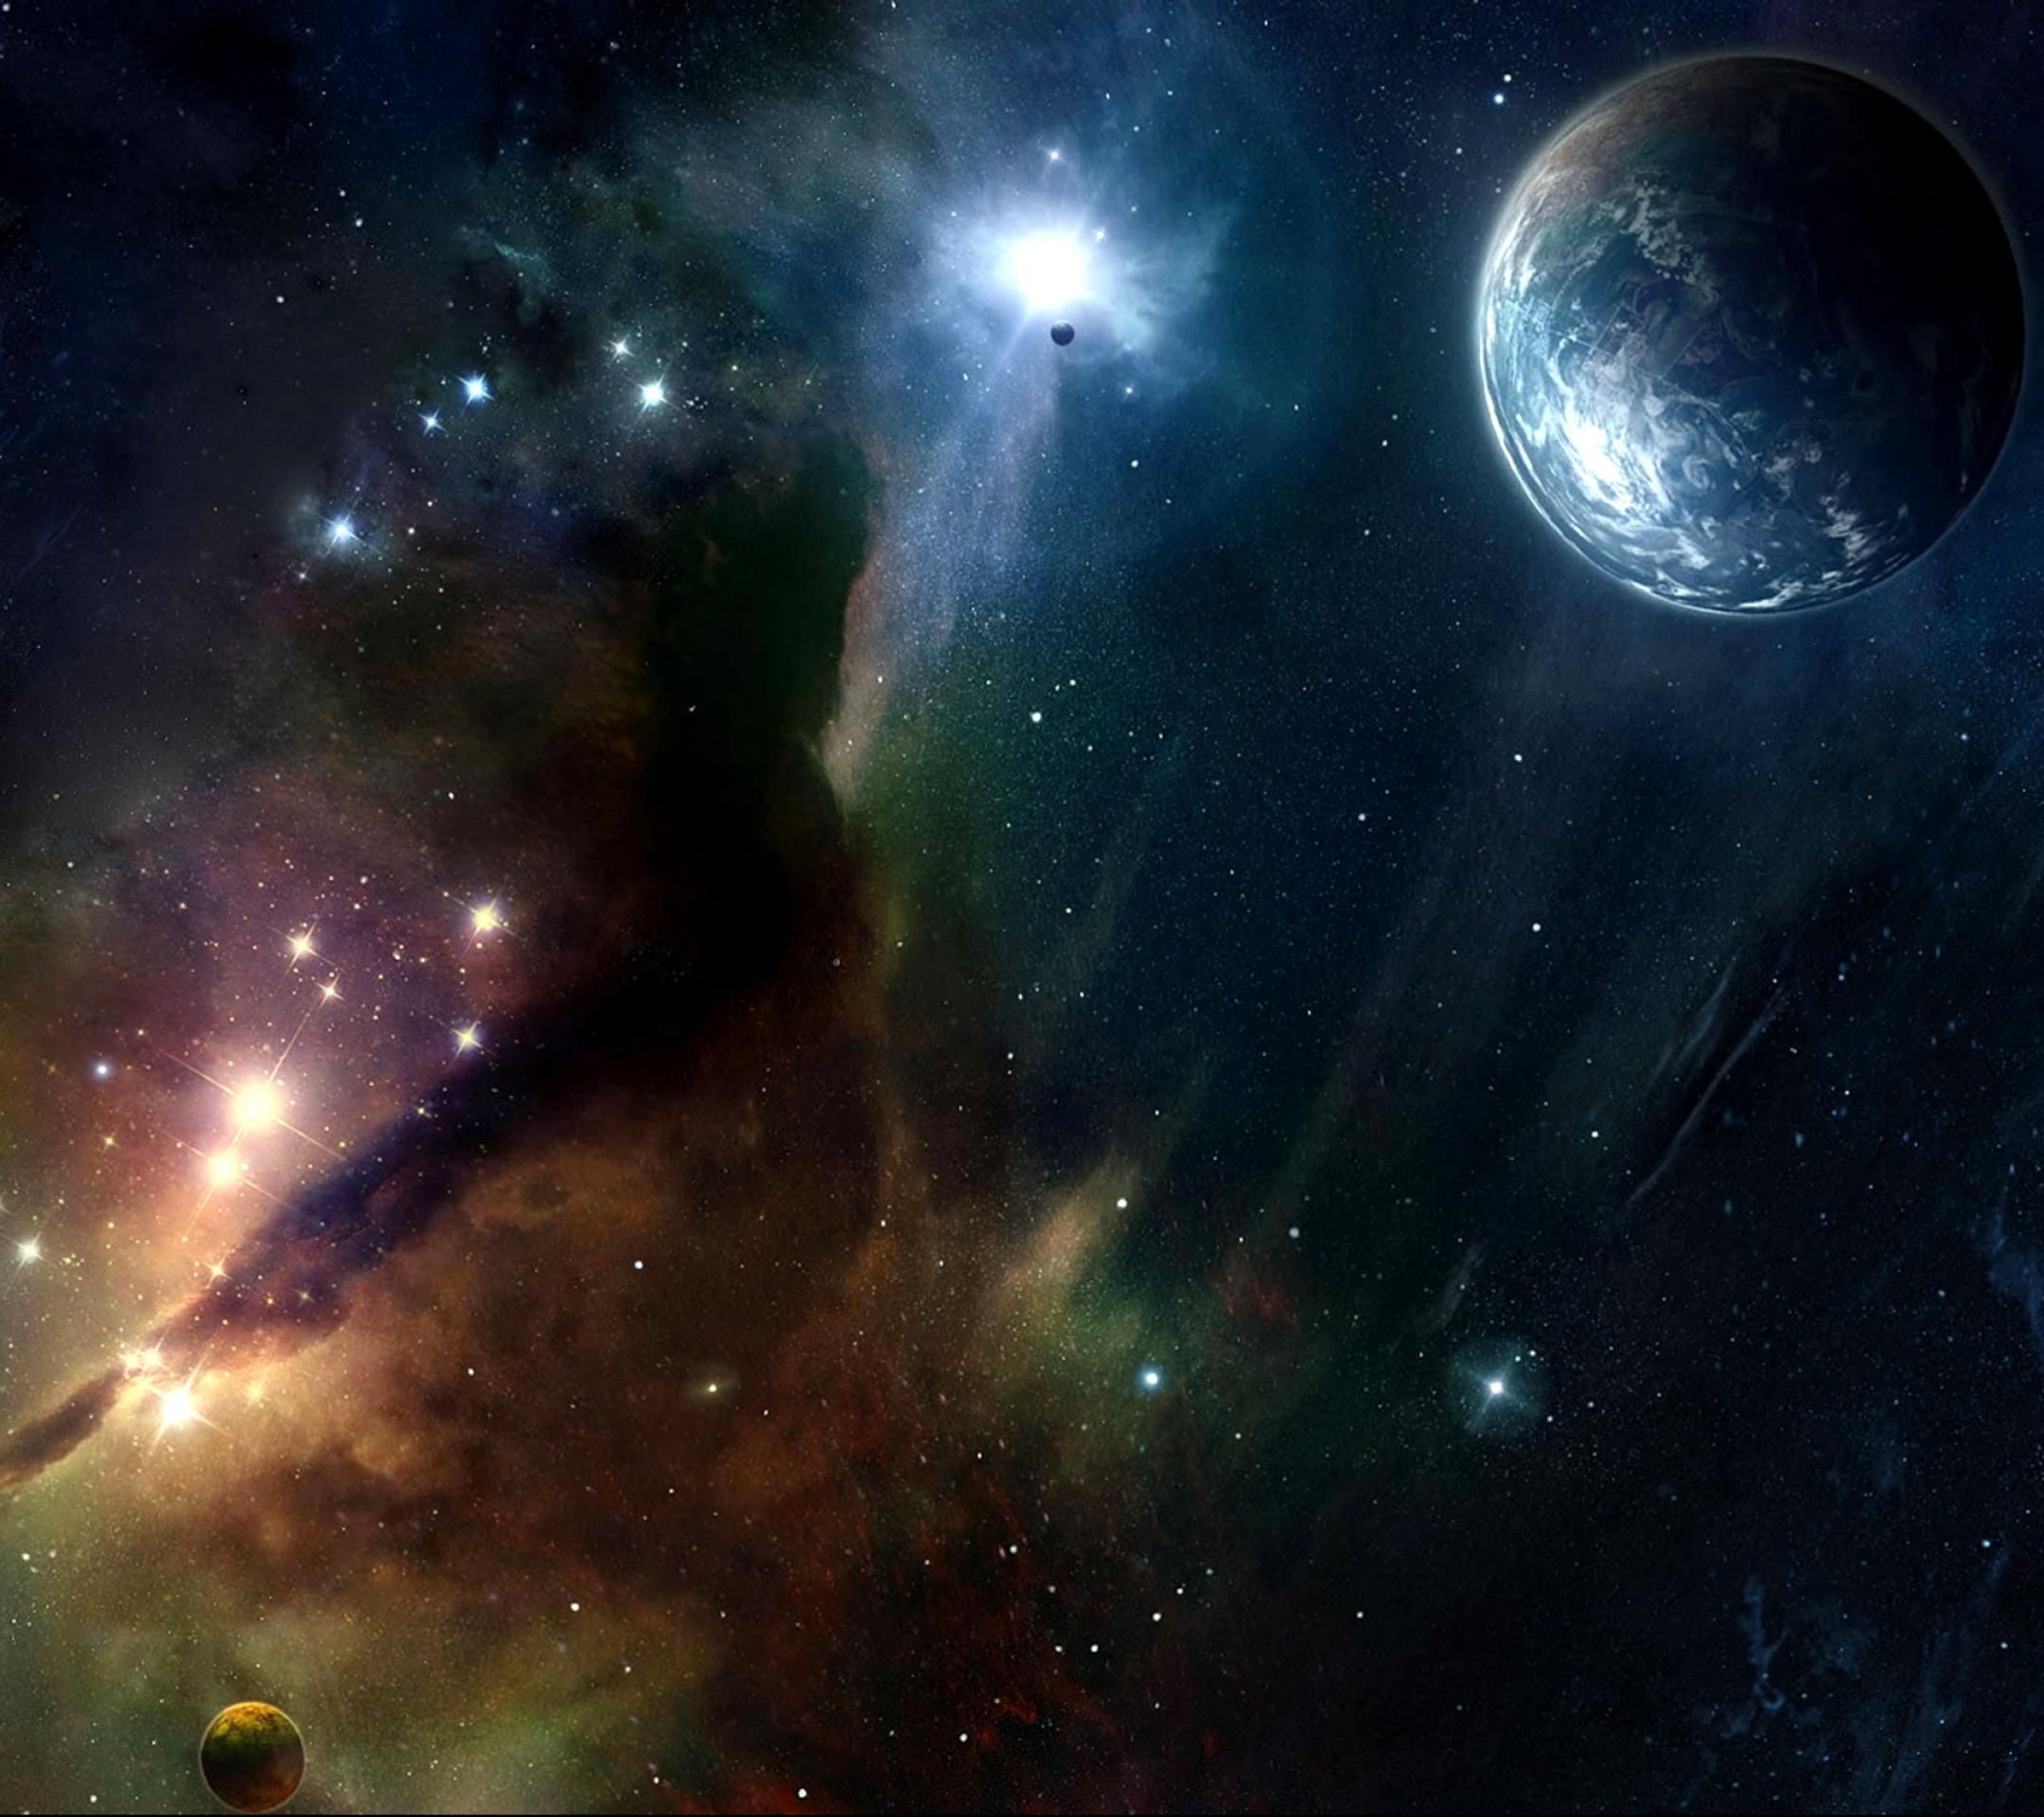 Descarga gratuita de fondo de pantalla para móvil de Estrellas, Nebulosa, Espacio, Planeta, Ciencia Ficción.